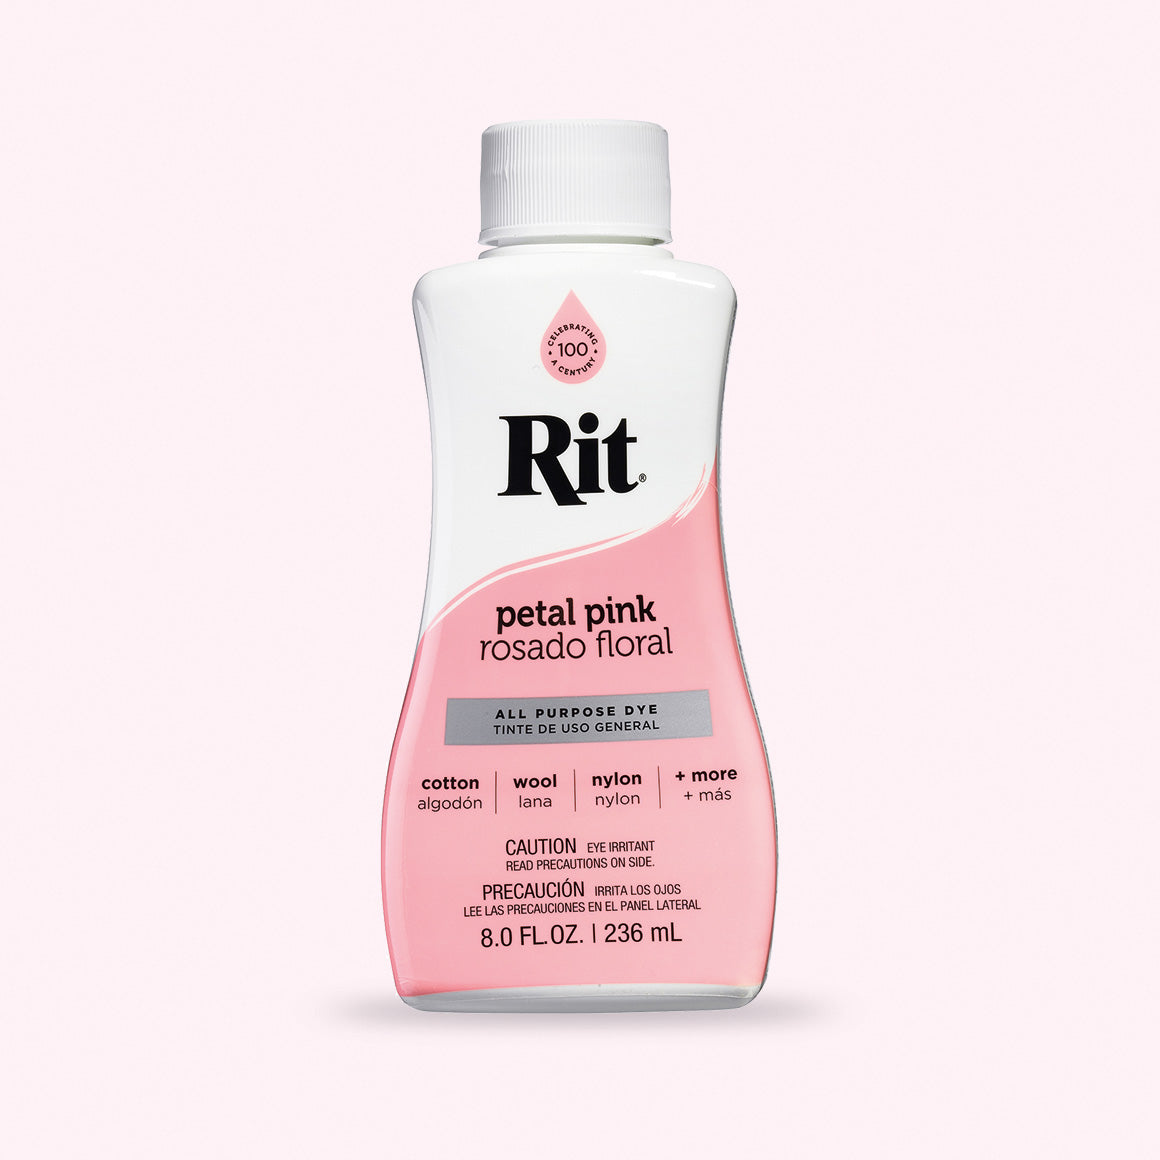 Rit All Purpose Dye, Petal Pink - 8.0 fl oz